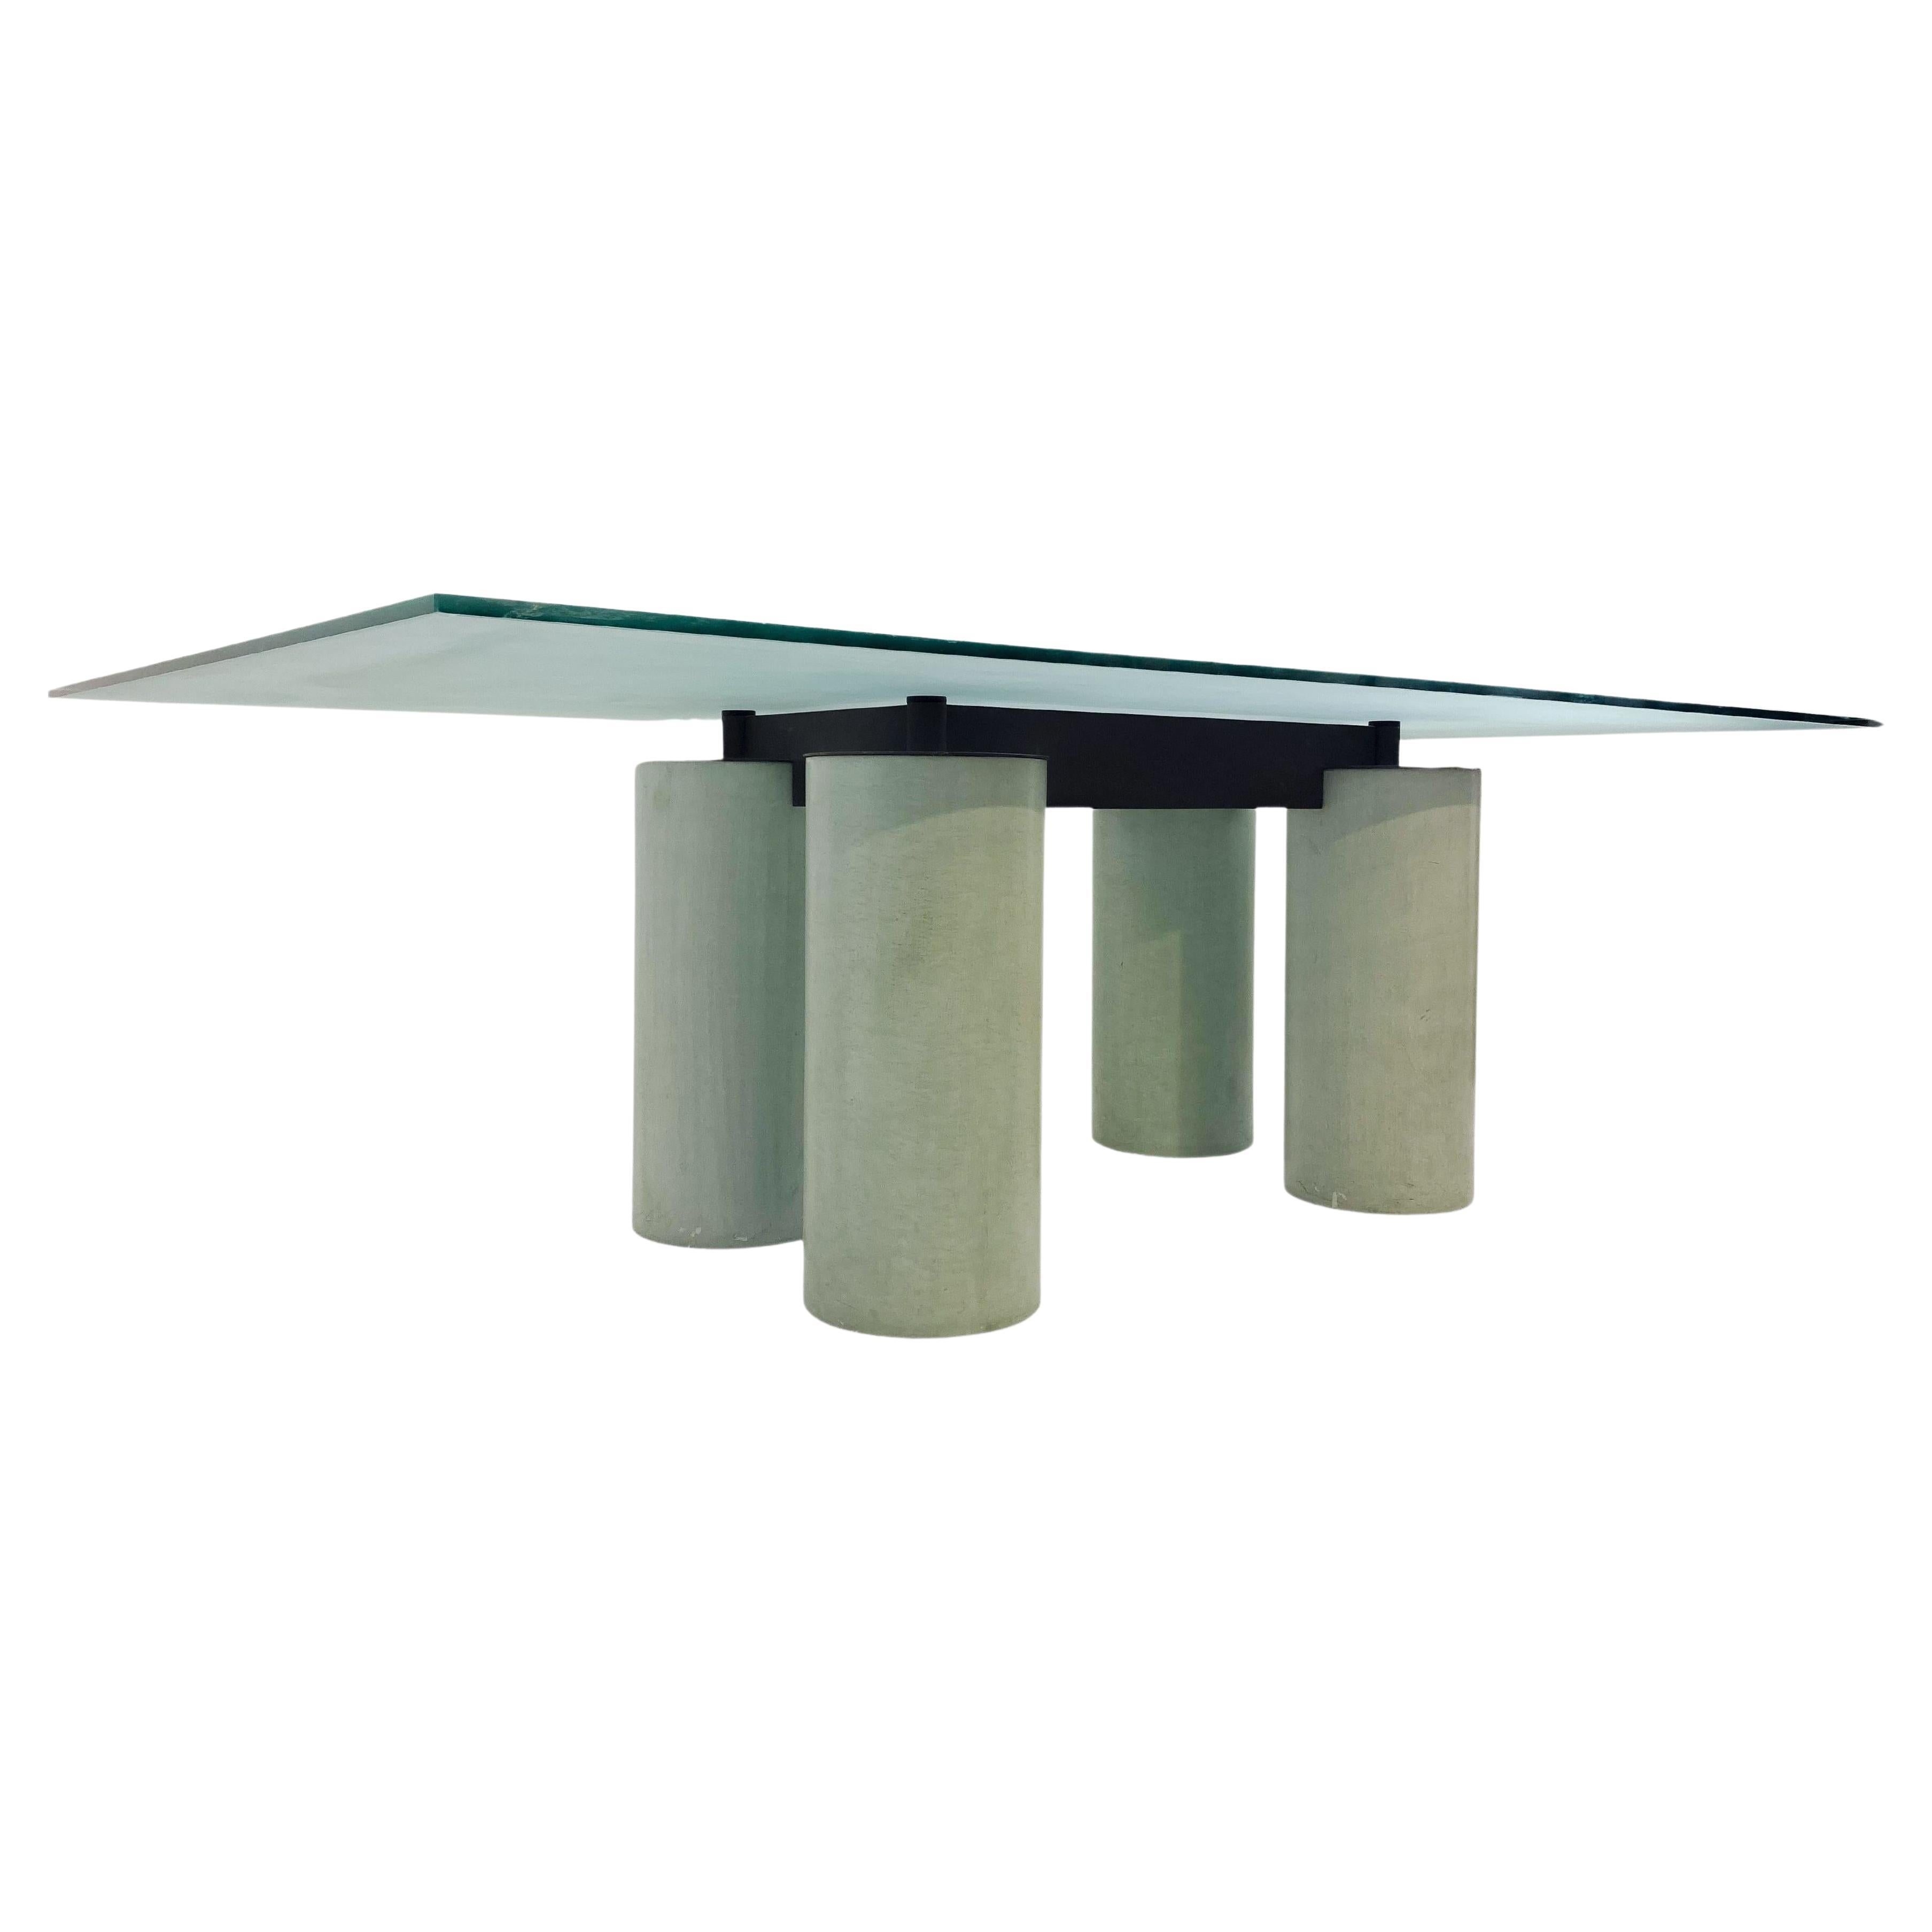 Table de salle à manger "Serenissima" de Lella & Massimo Vignelli, moderne du milieu du siècle dernier